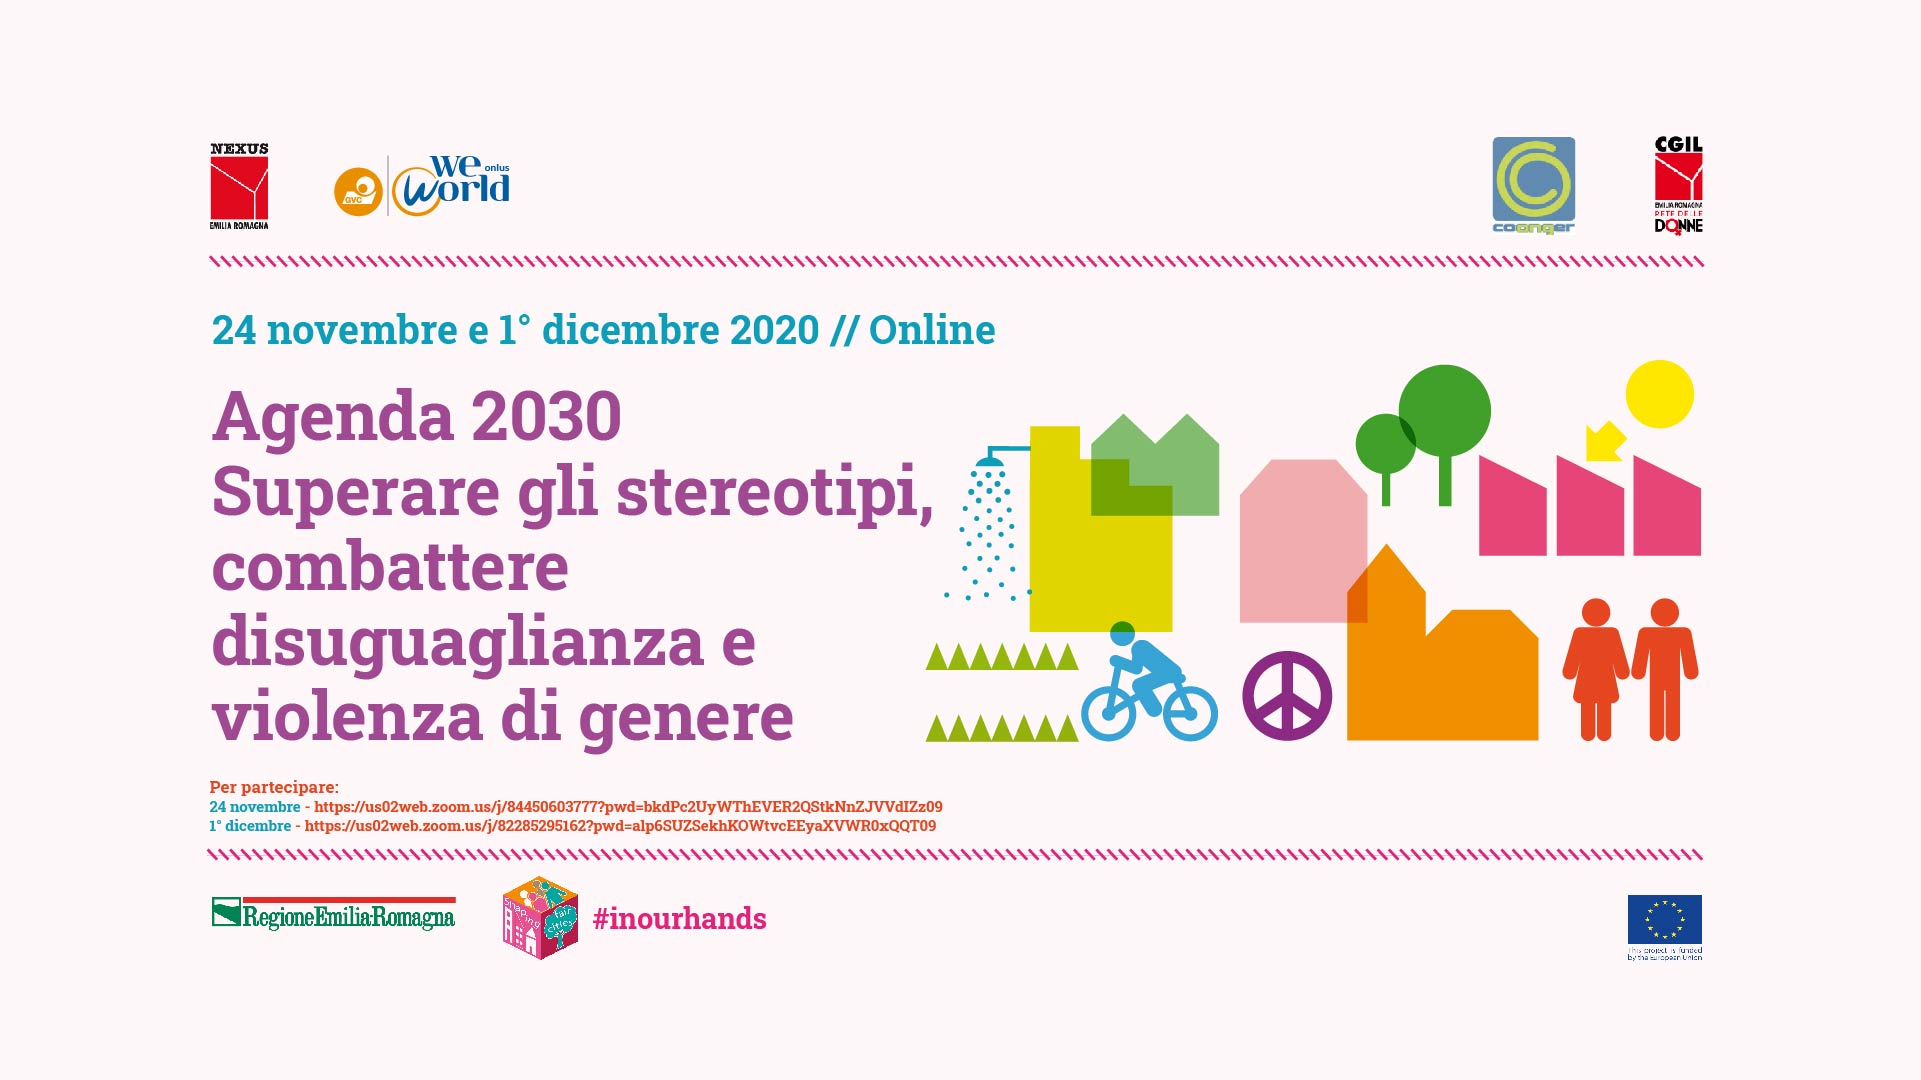 “Agenda 2030 Superare gli stereotipi, combattere disuglianza e violenza di genere”